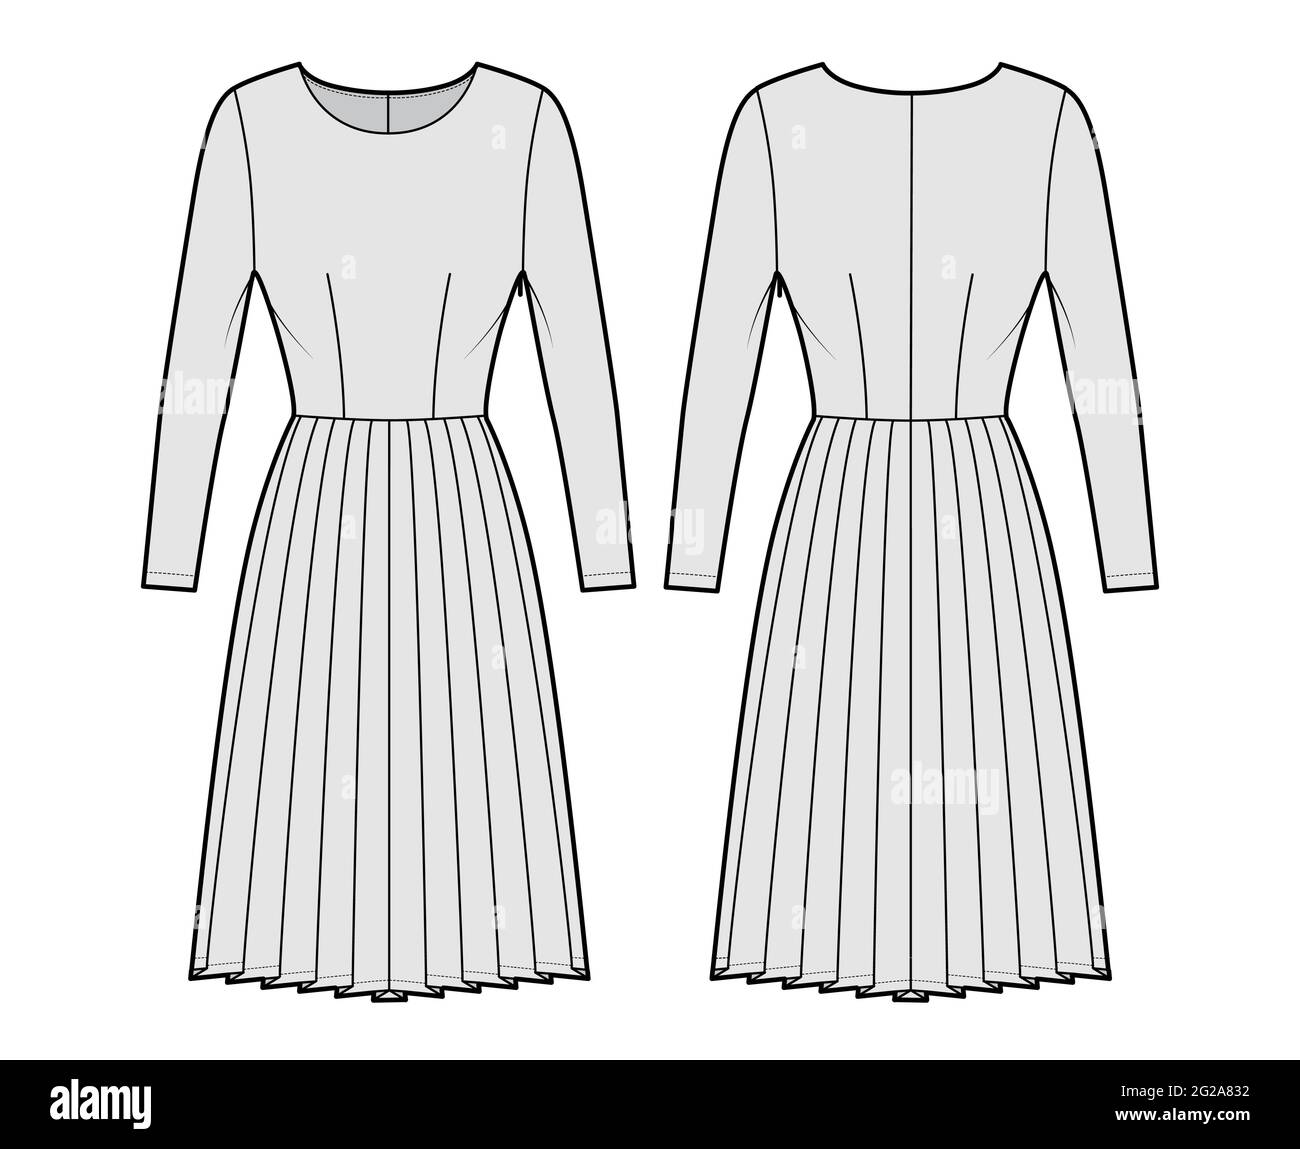 Falda plateada Imágenes de stock en blanco y negro - Alamy